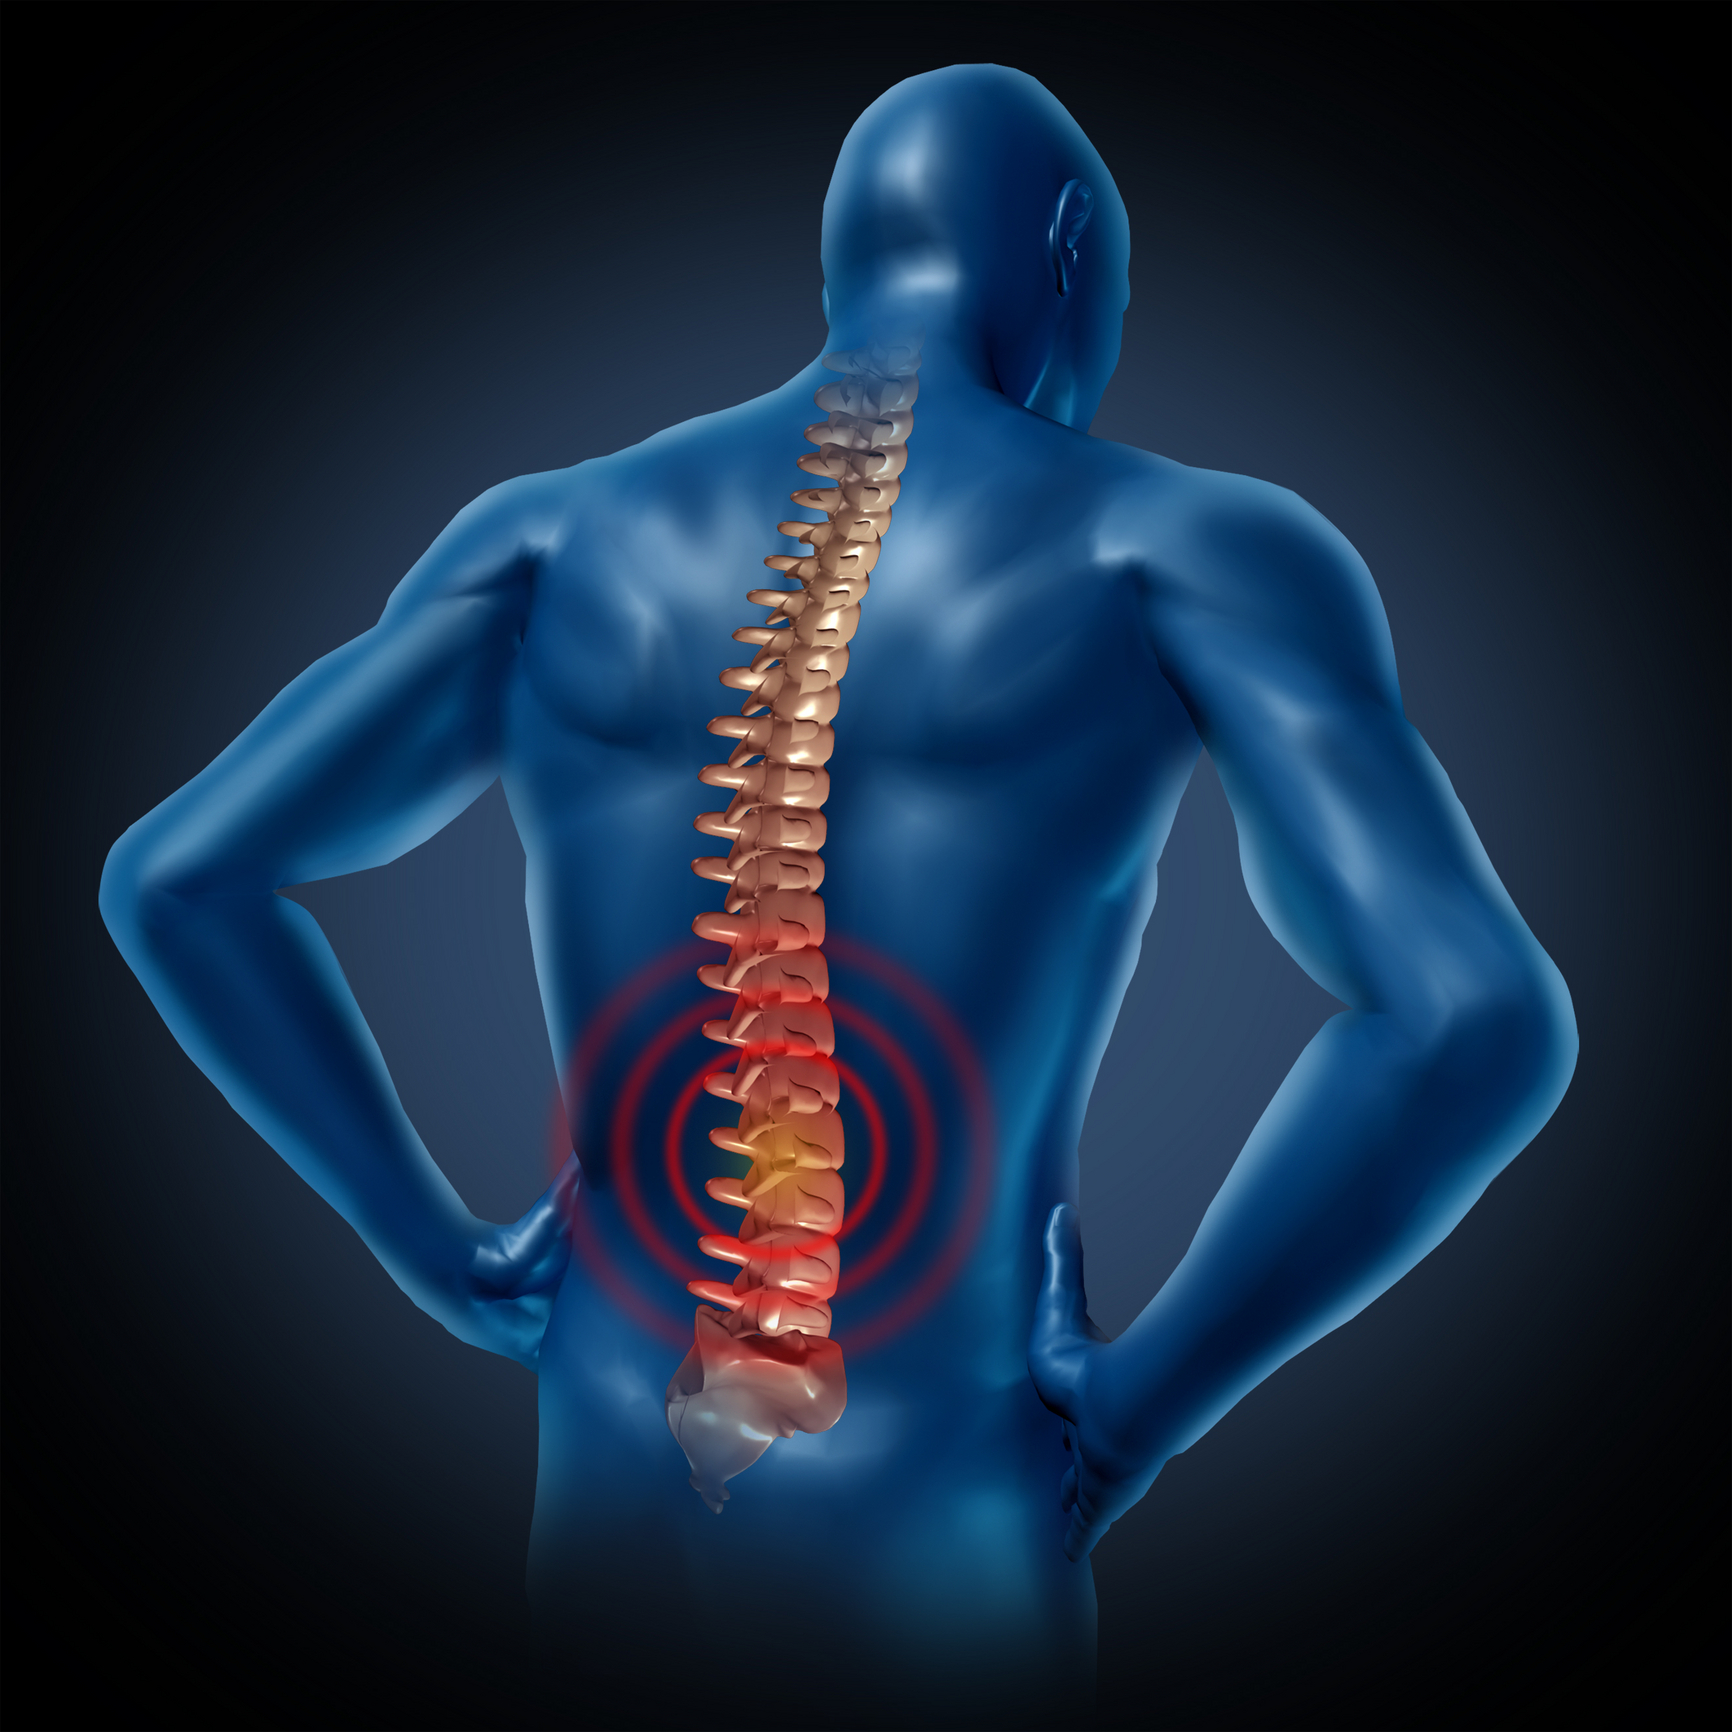 nugaros skausmo gydymas skausmas kaireje nugaros puseje apacioje